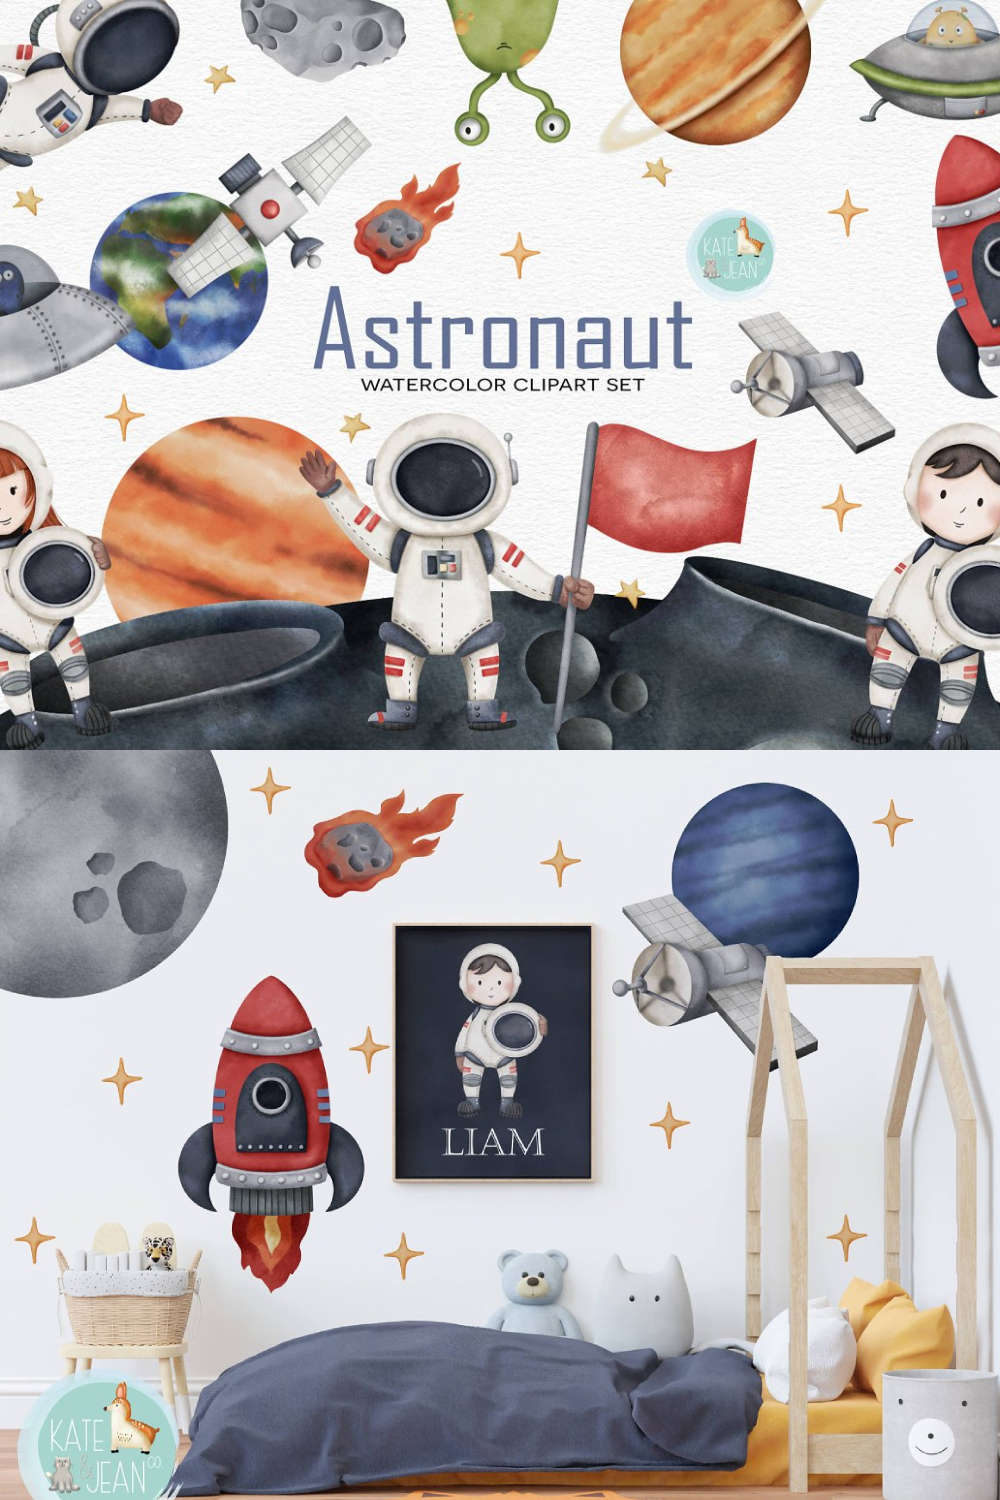 Astronaut Watercolor Clipart - Pinterest.